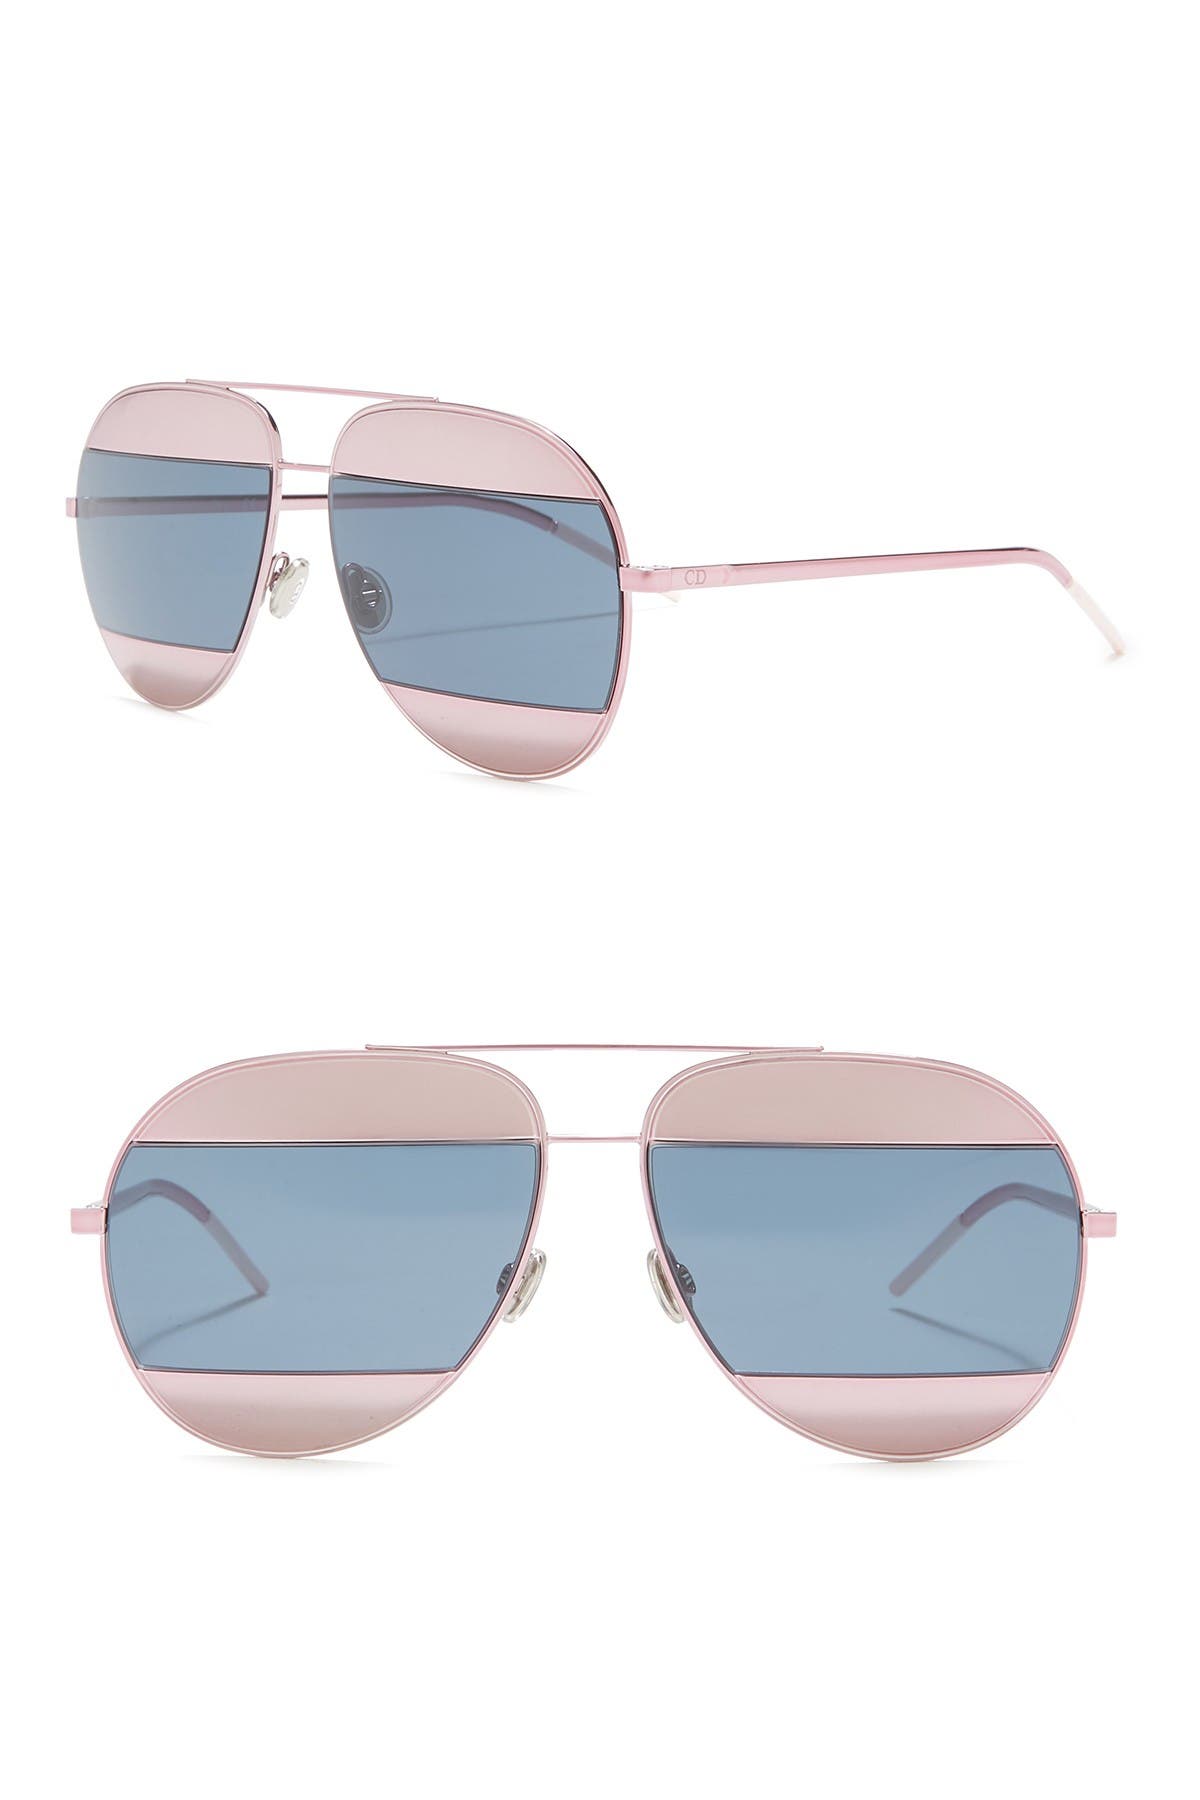 dior sunglasses split